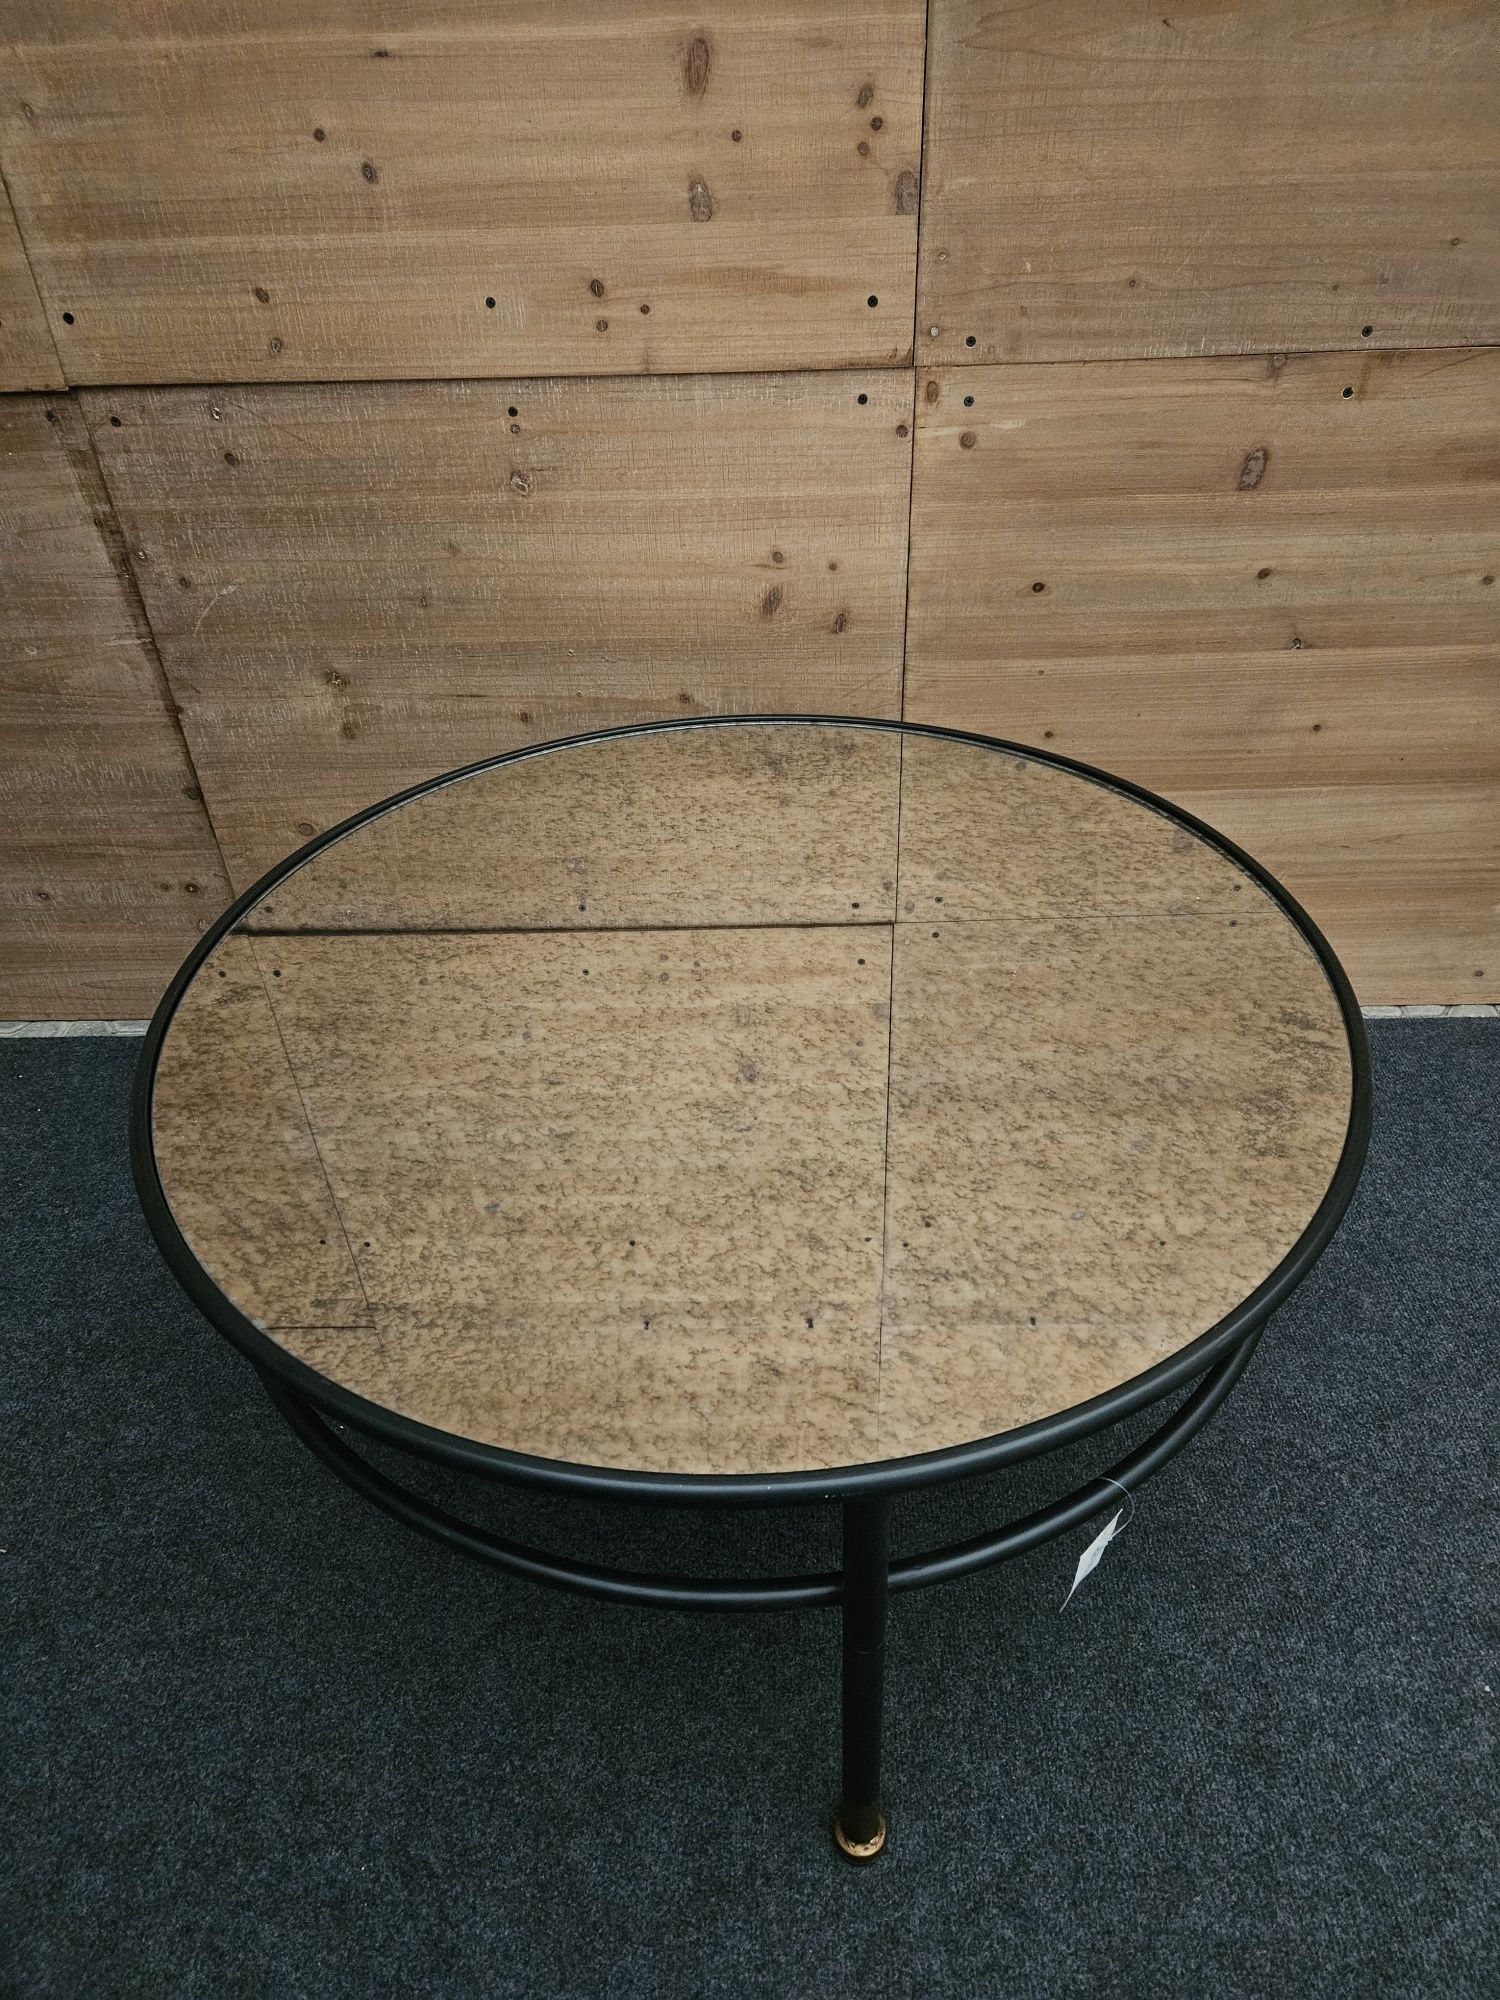 Czarny metalowy okrągły stolik lustrzany blat